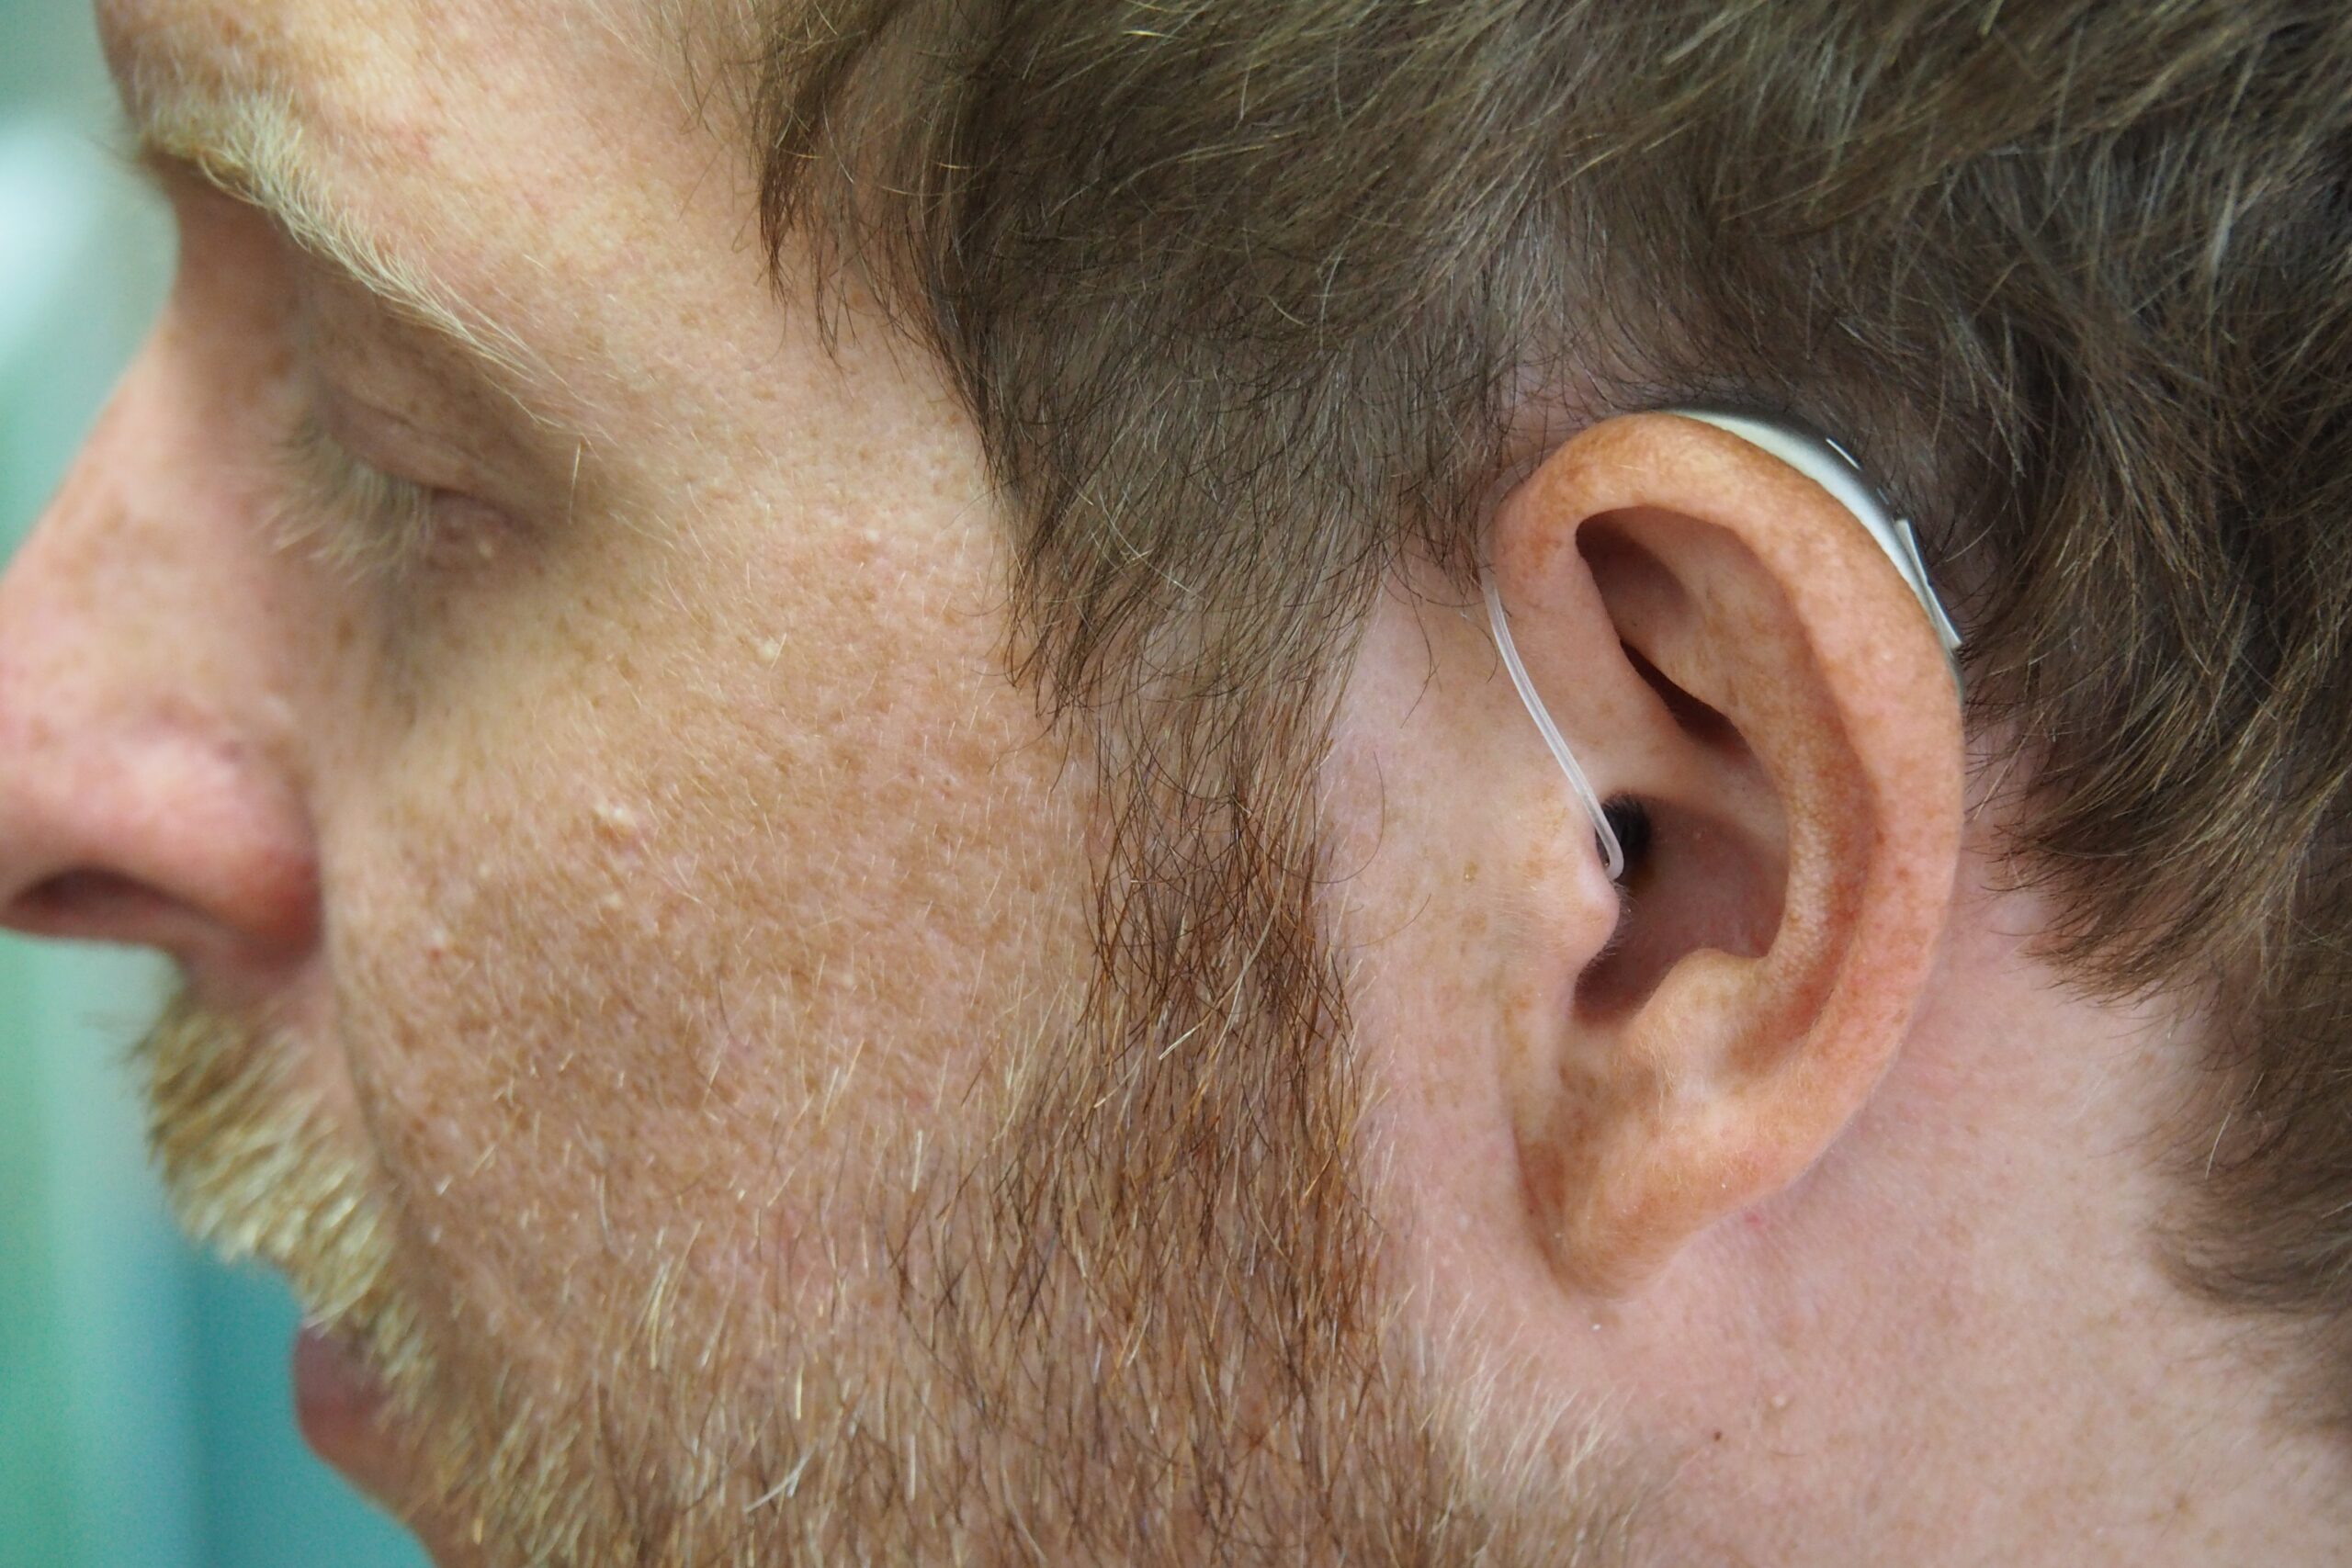 RIC slušni aparat postavljen na uhu muškarca